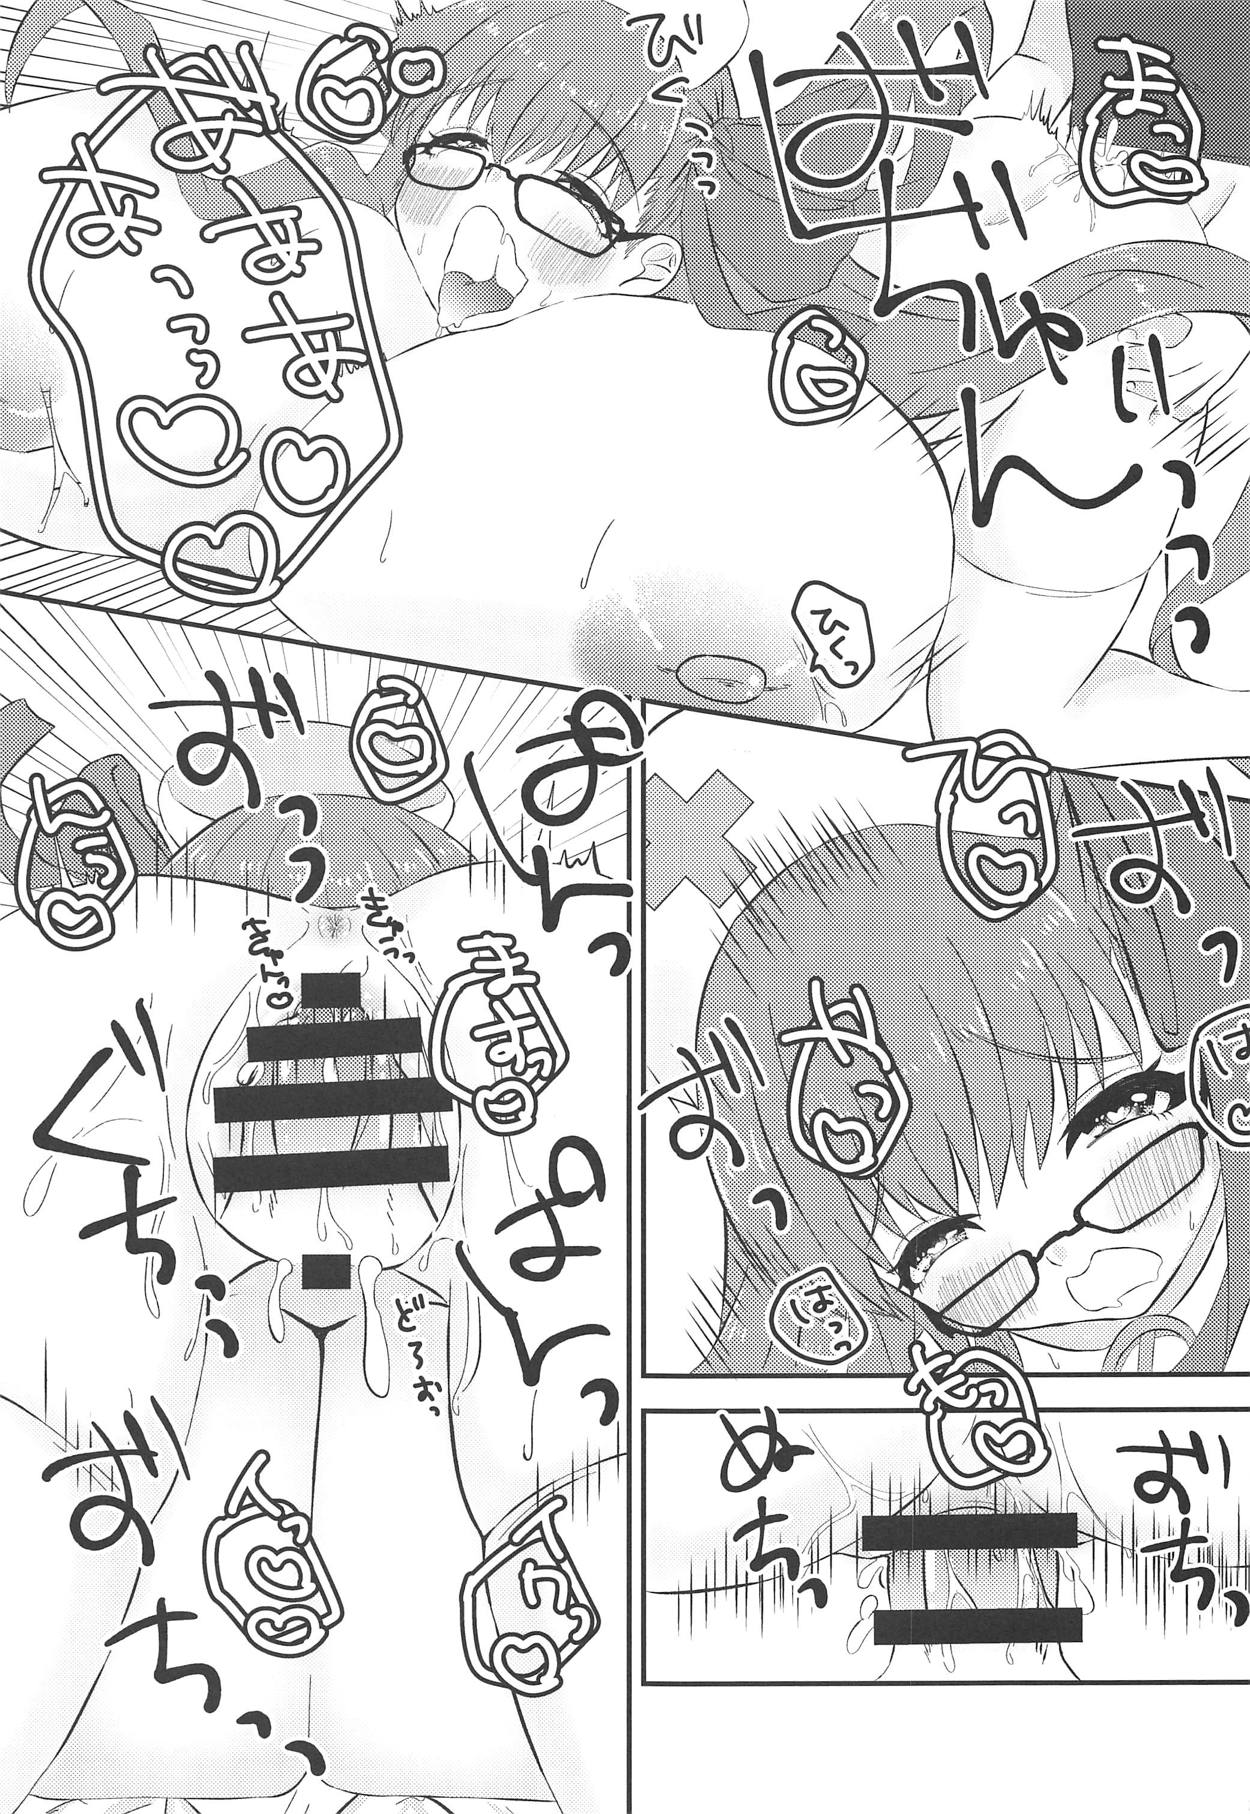 (COMIC1☆15) [ちょこれぃとじゃむ (こあら)] リップちゃんは何着てもカワイイvol.2 + コミ1 15限定コピー本 (Fate/Grand Order)